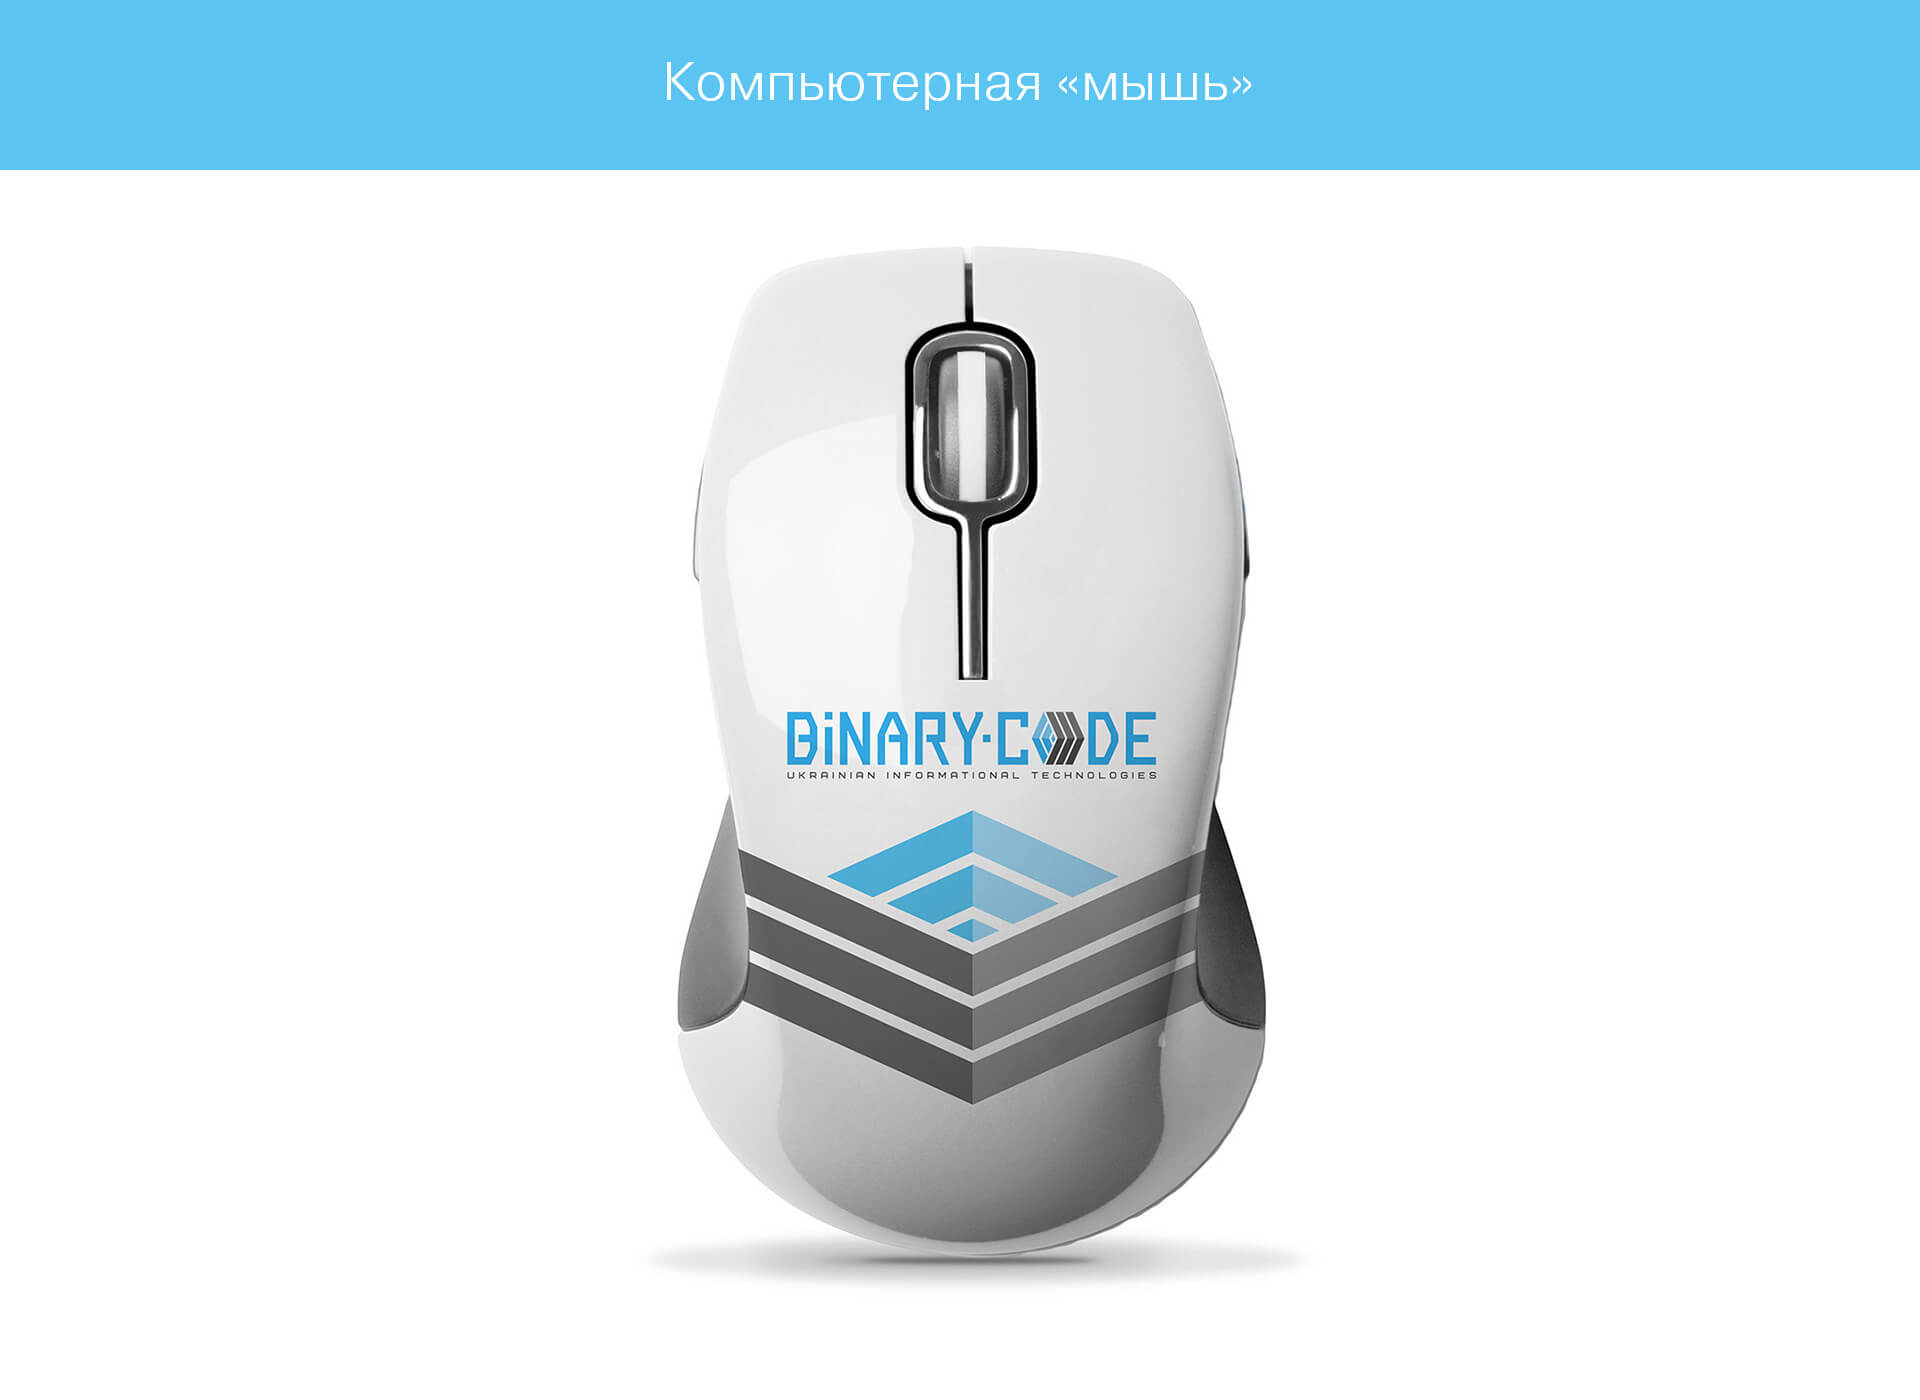 создание разработка бренда компании BINARY CODE брендинг киев украина киеве логотипа фирменного стиля упаковки дизайн фирменного стиля fantastic imago брендиногове рекламное агенство